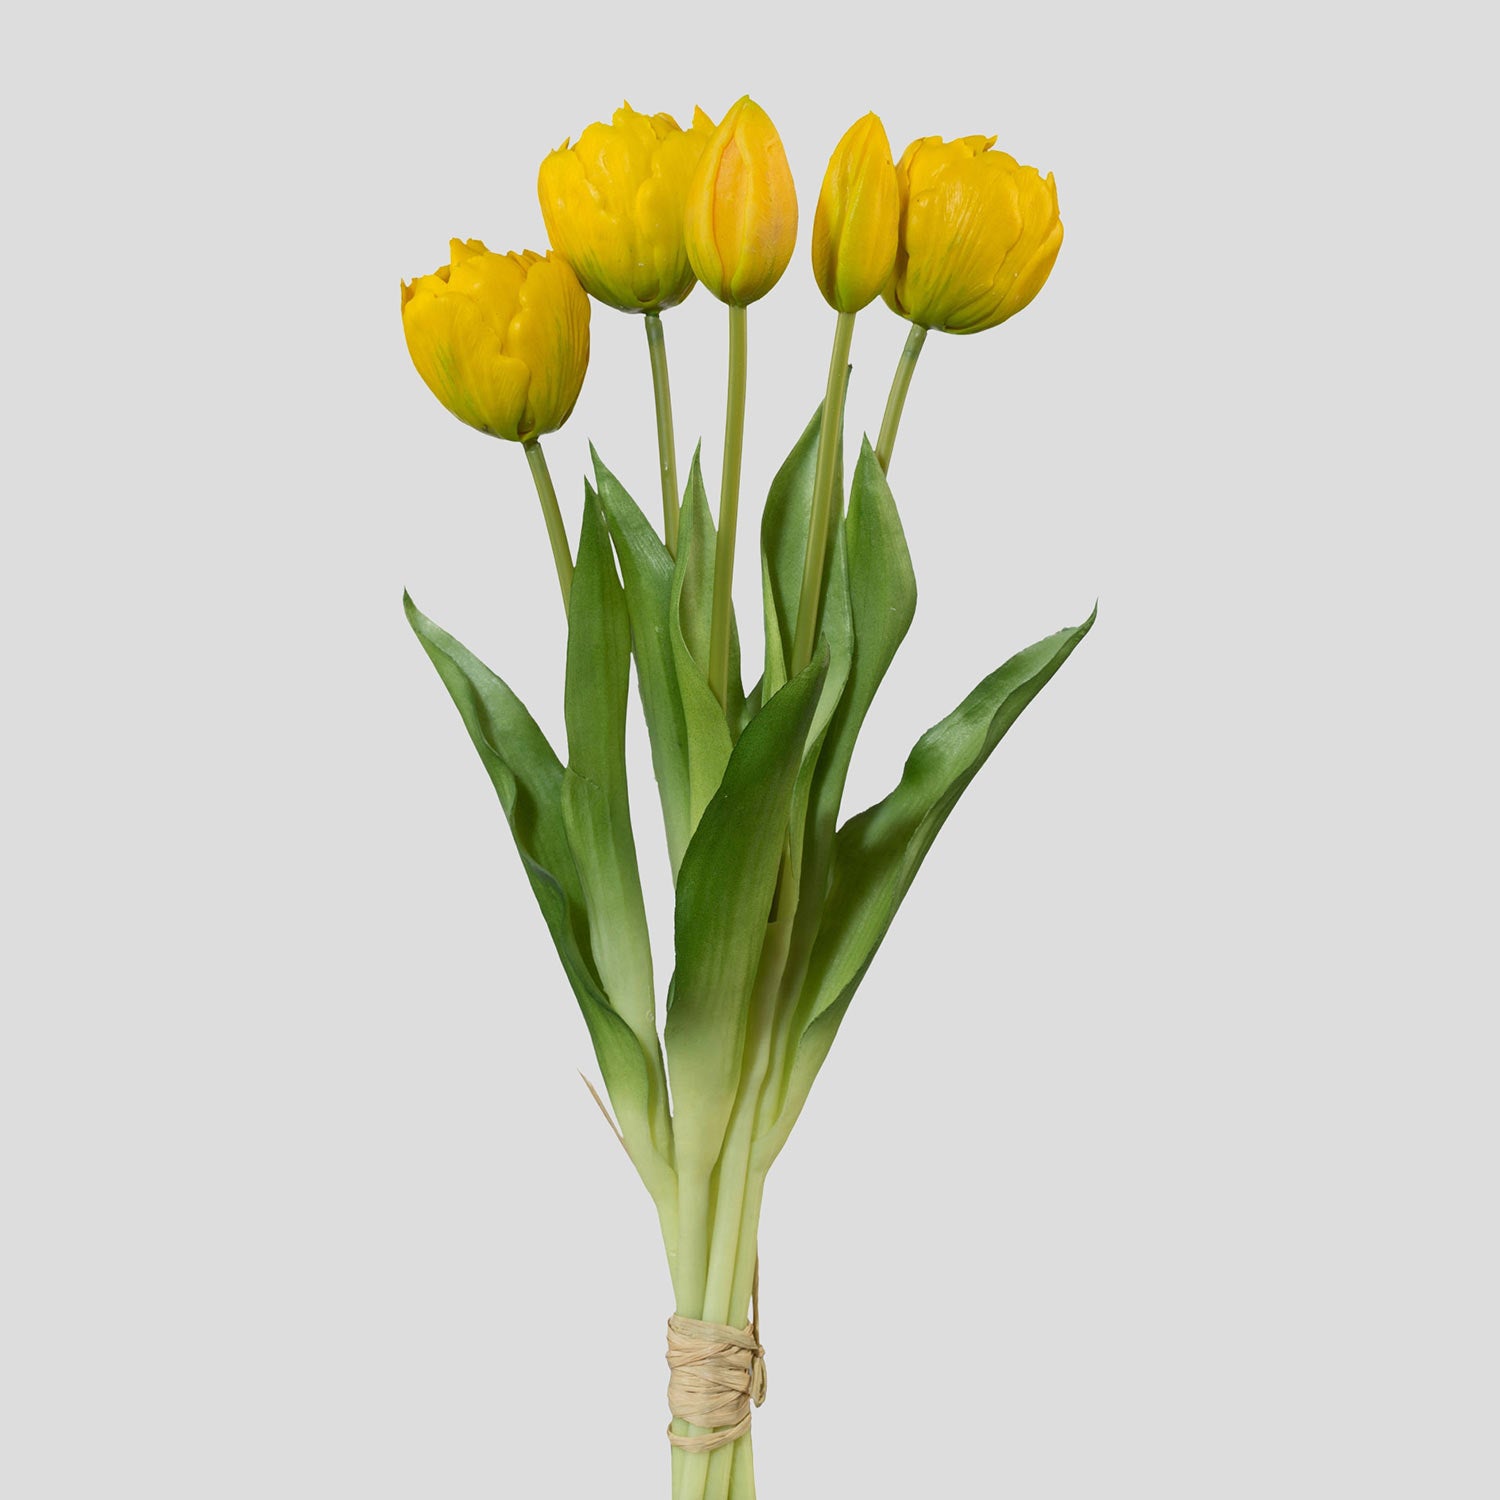 5 szálból álló, sárga színű tulipáncsokor művirág, nyílt és bimbós virágfejekkel.